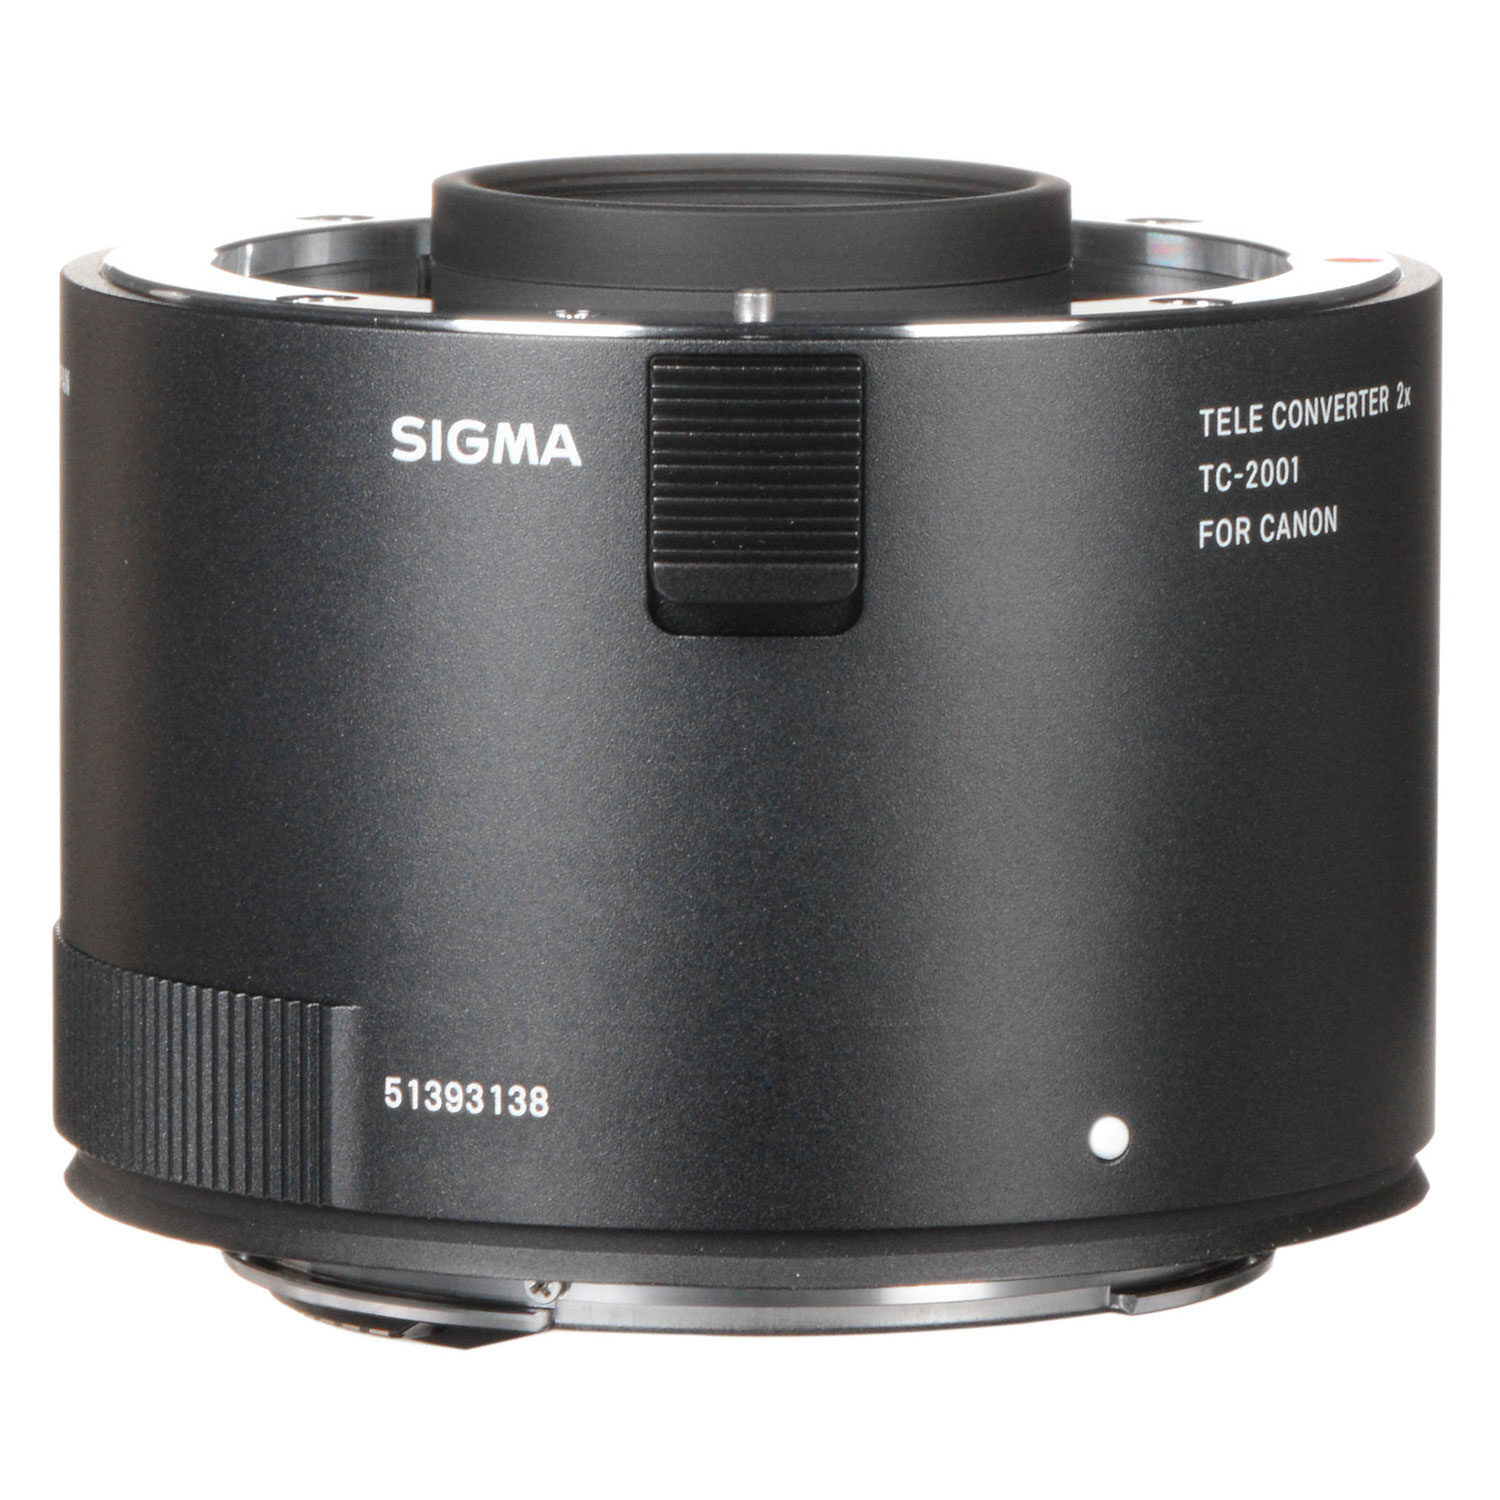 Sigma Tele Converter TC-2001 Canon